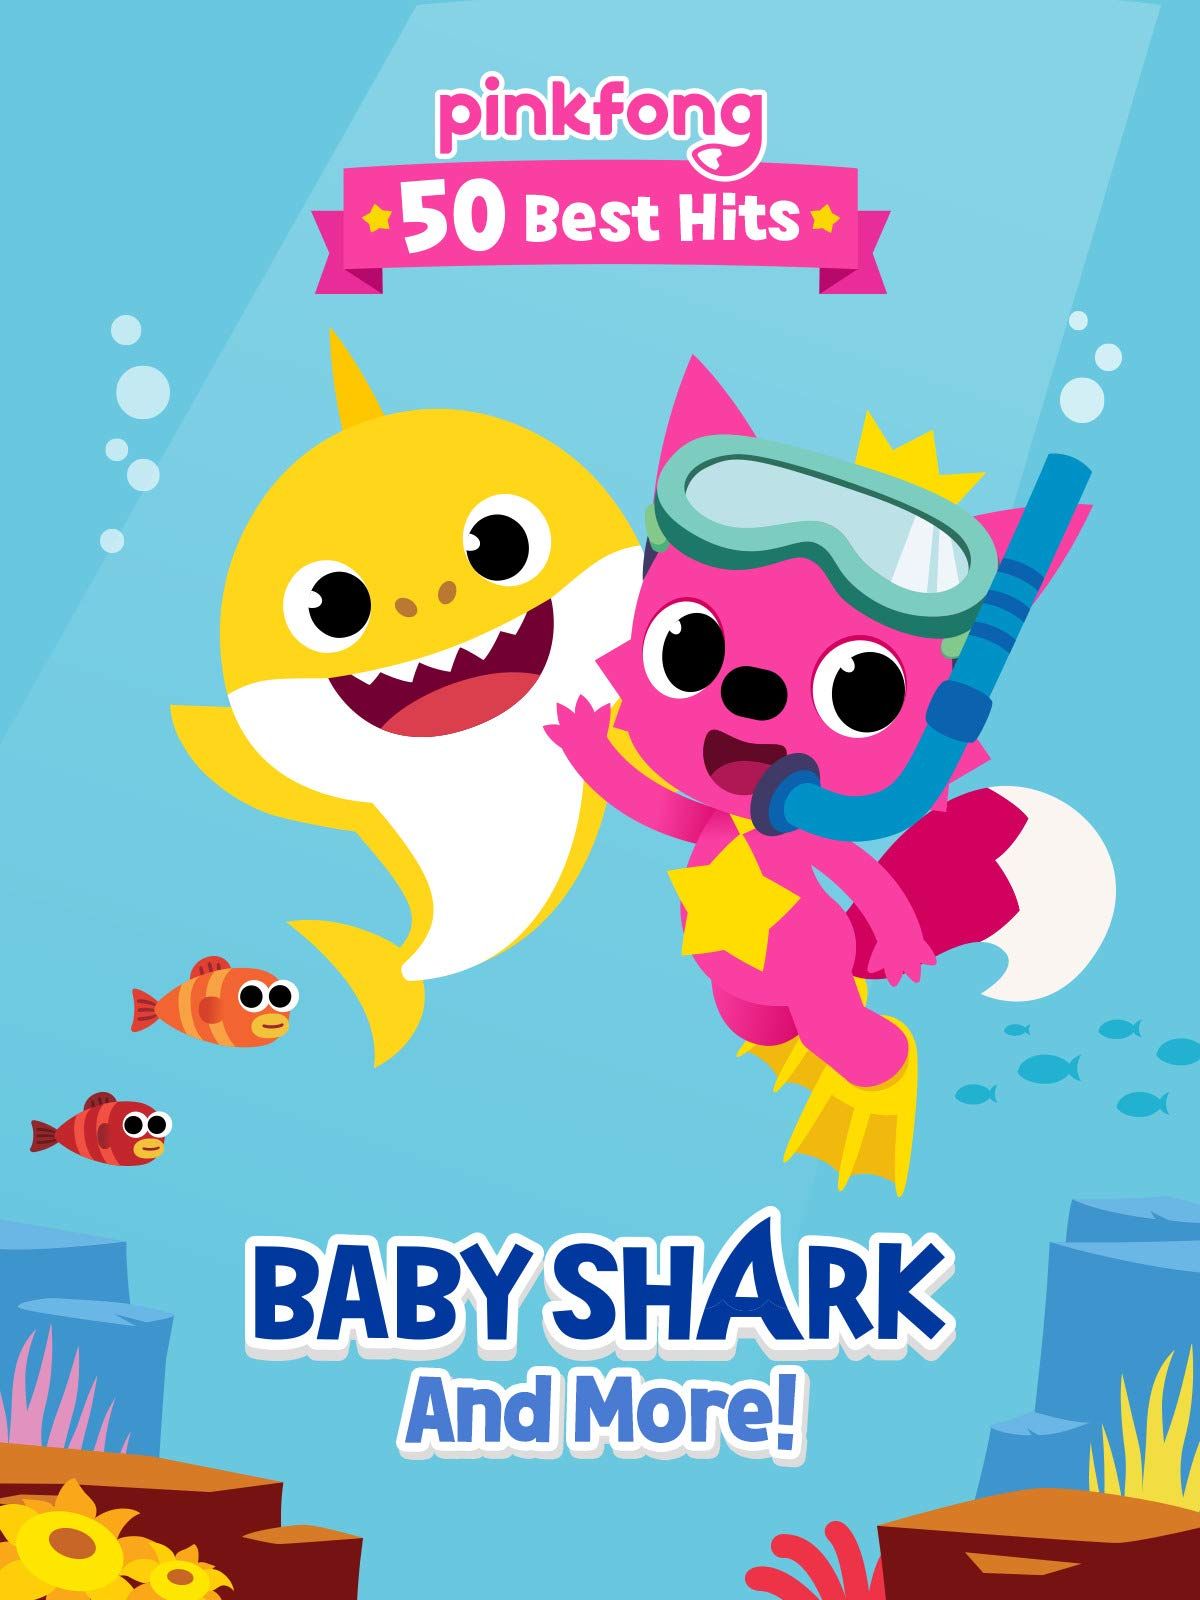 4K] Eu Sou o Melhor, Baby Shark